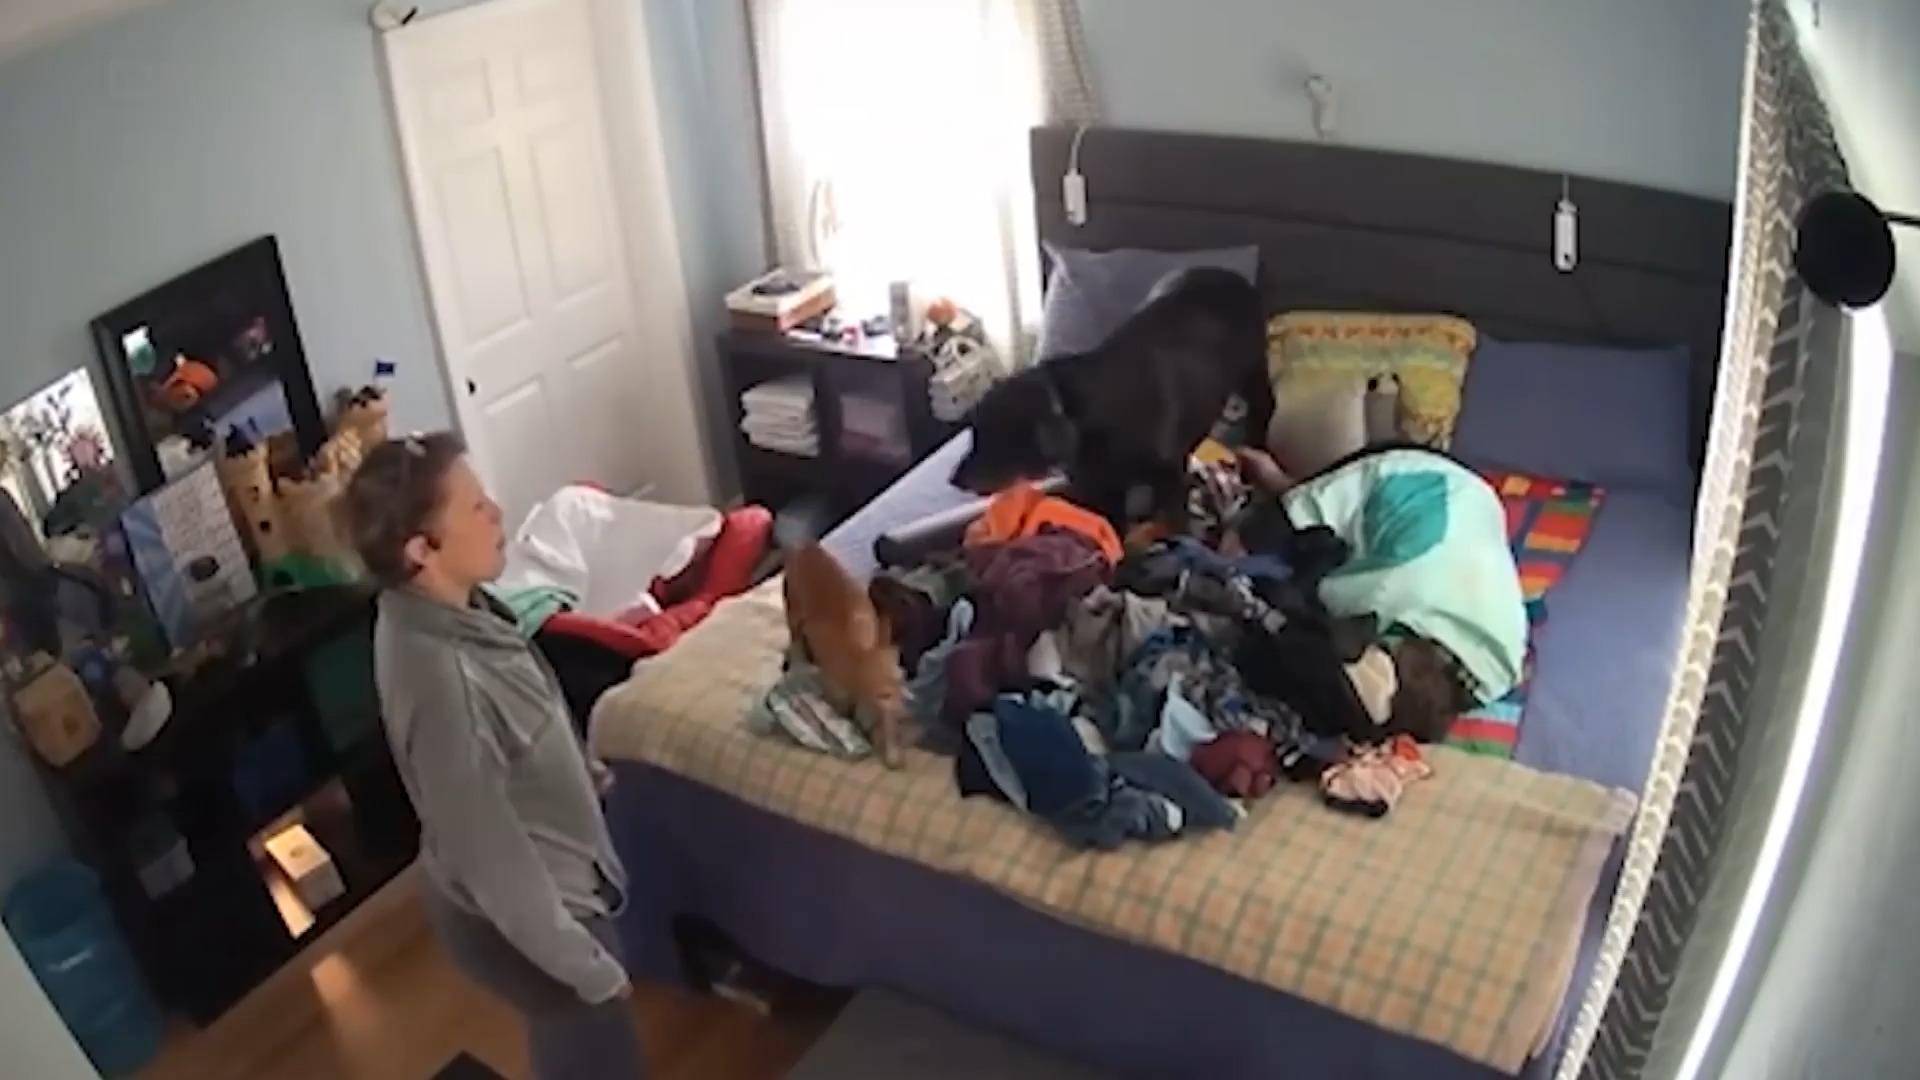 Obdachlose legt sich in Kinderzimmer-Bett Schockmoment für Familie